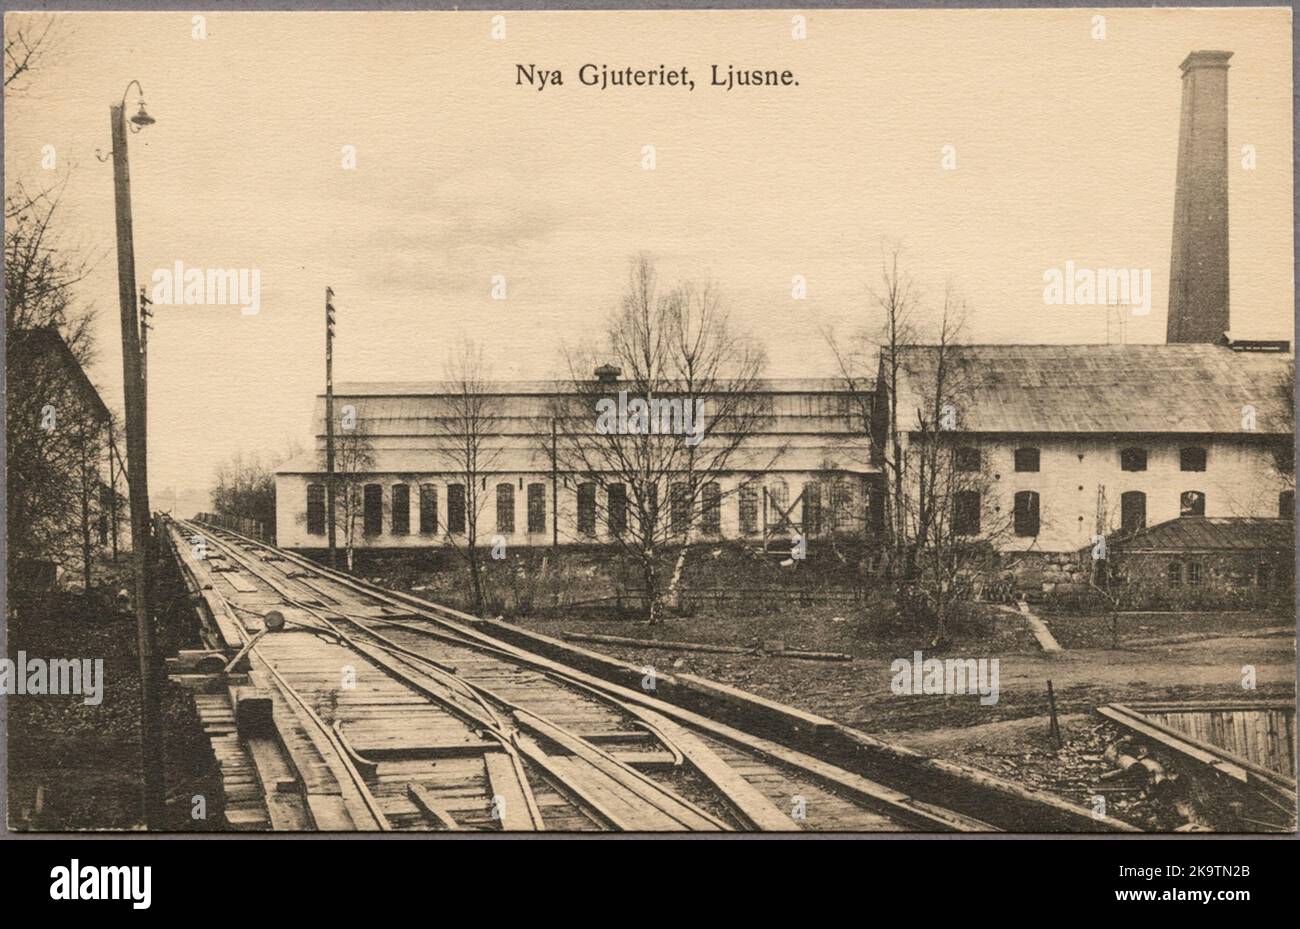 Ljusne foundry early 1900s. Stock Photo